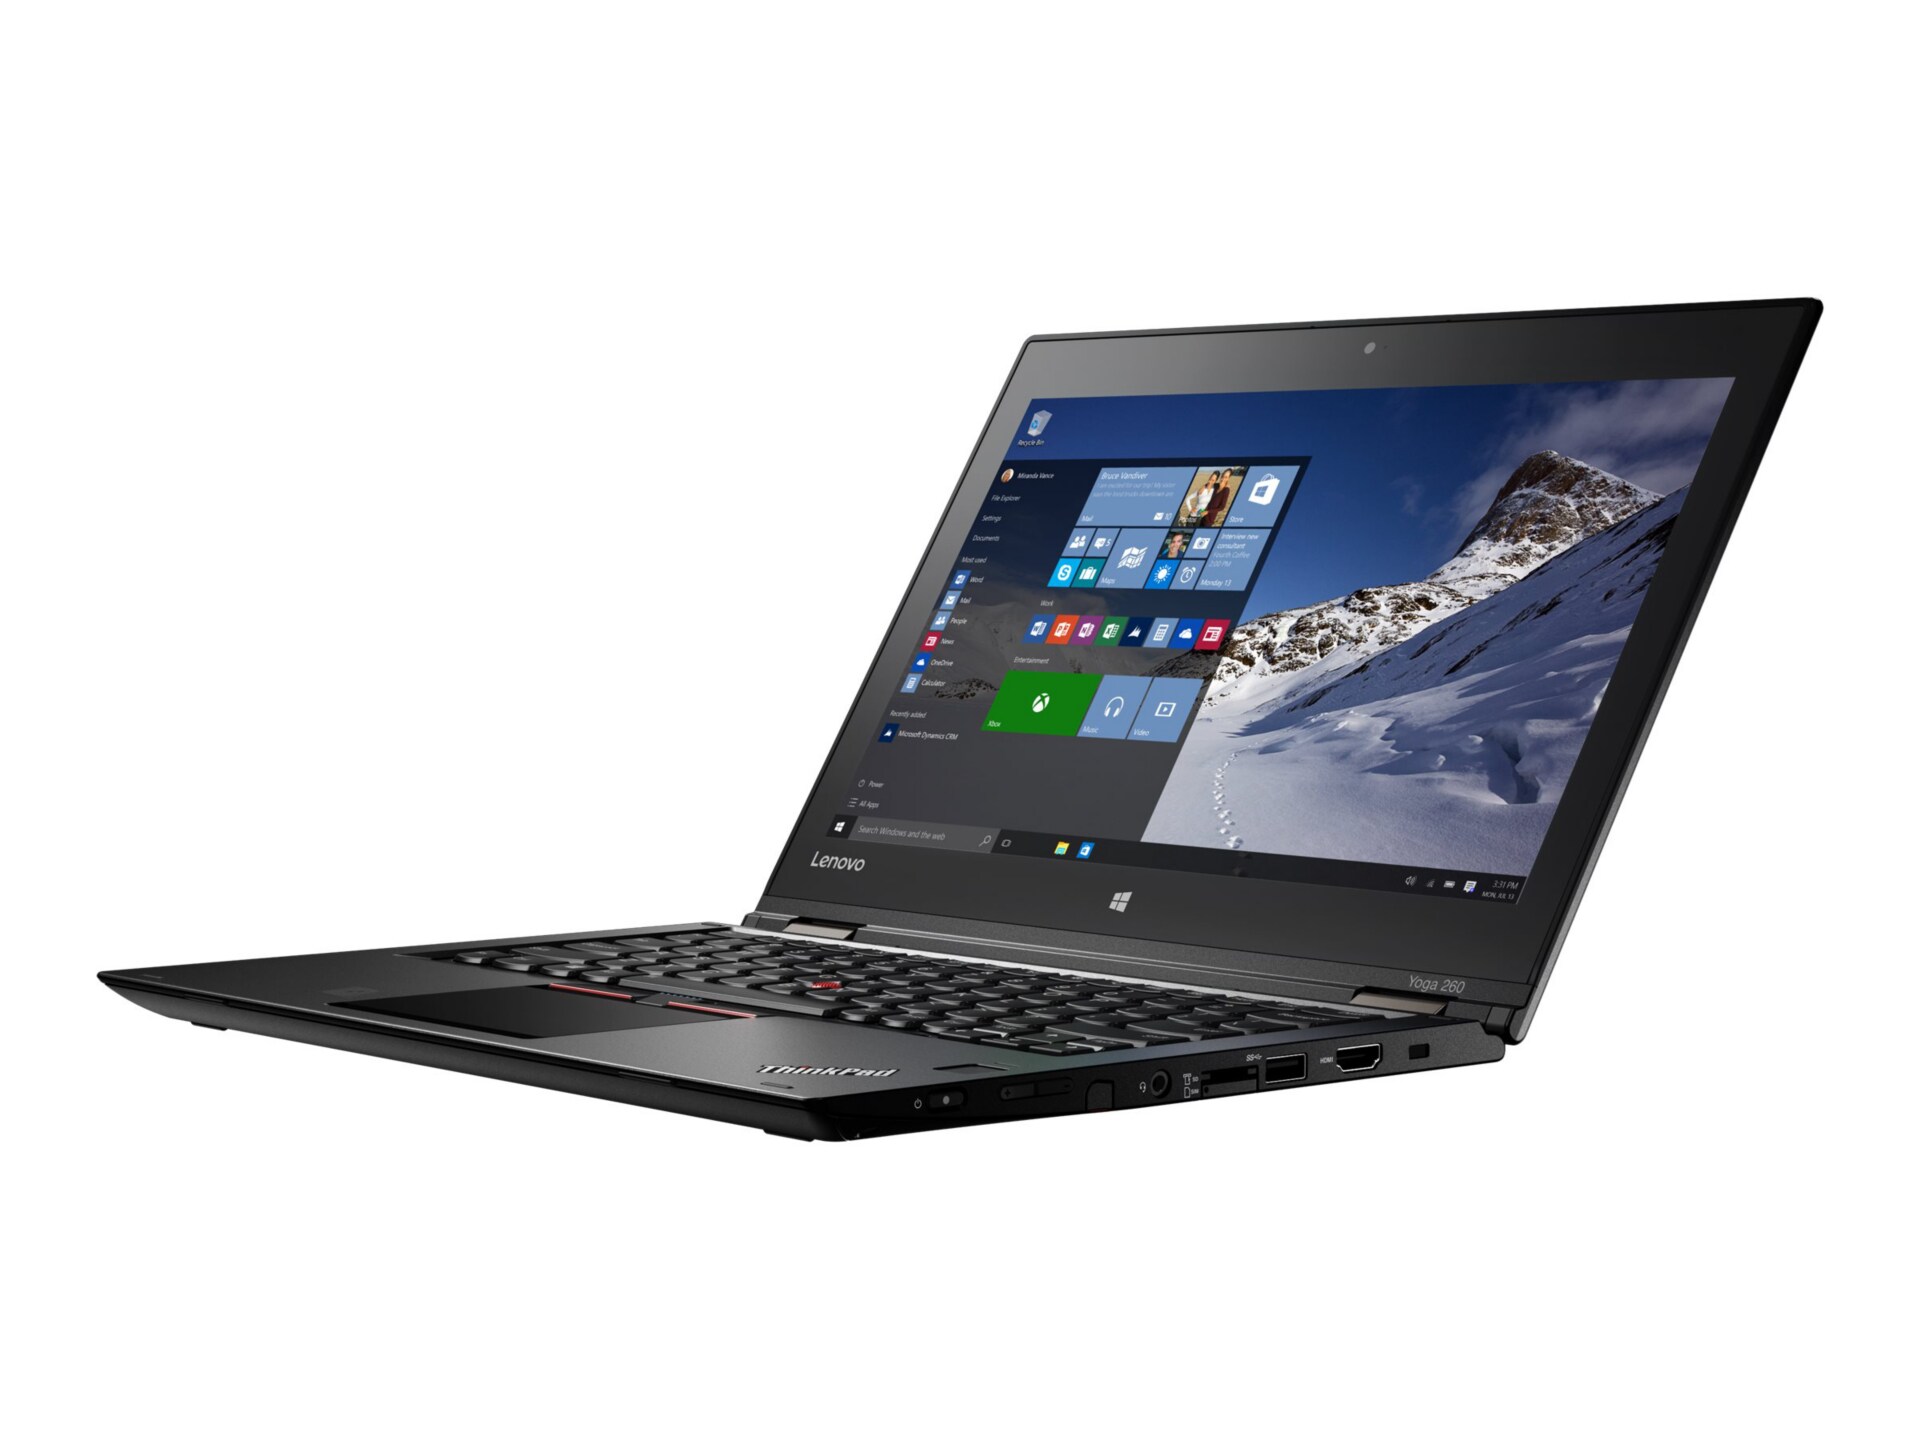 Lenovo ThinkPad Yoga 260 - 12.5" - Core i5 6200U - 8 GB RAM - 180 GB SSD